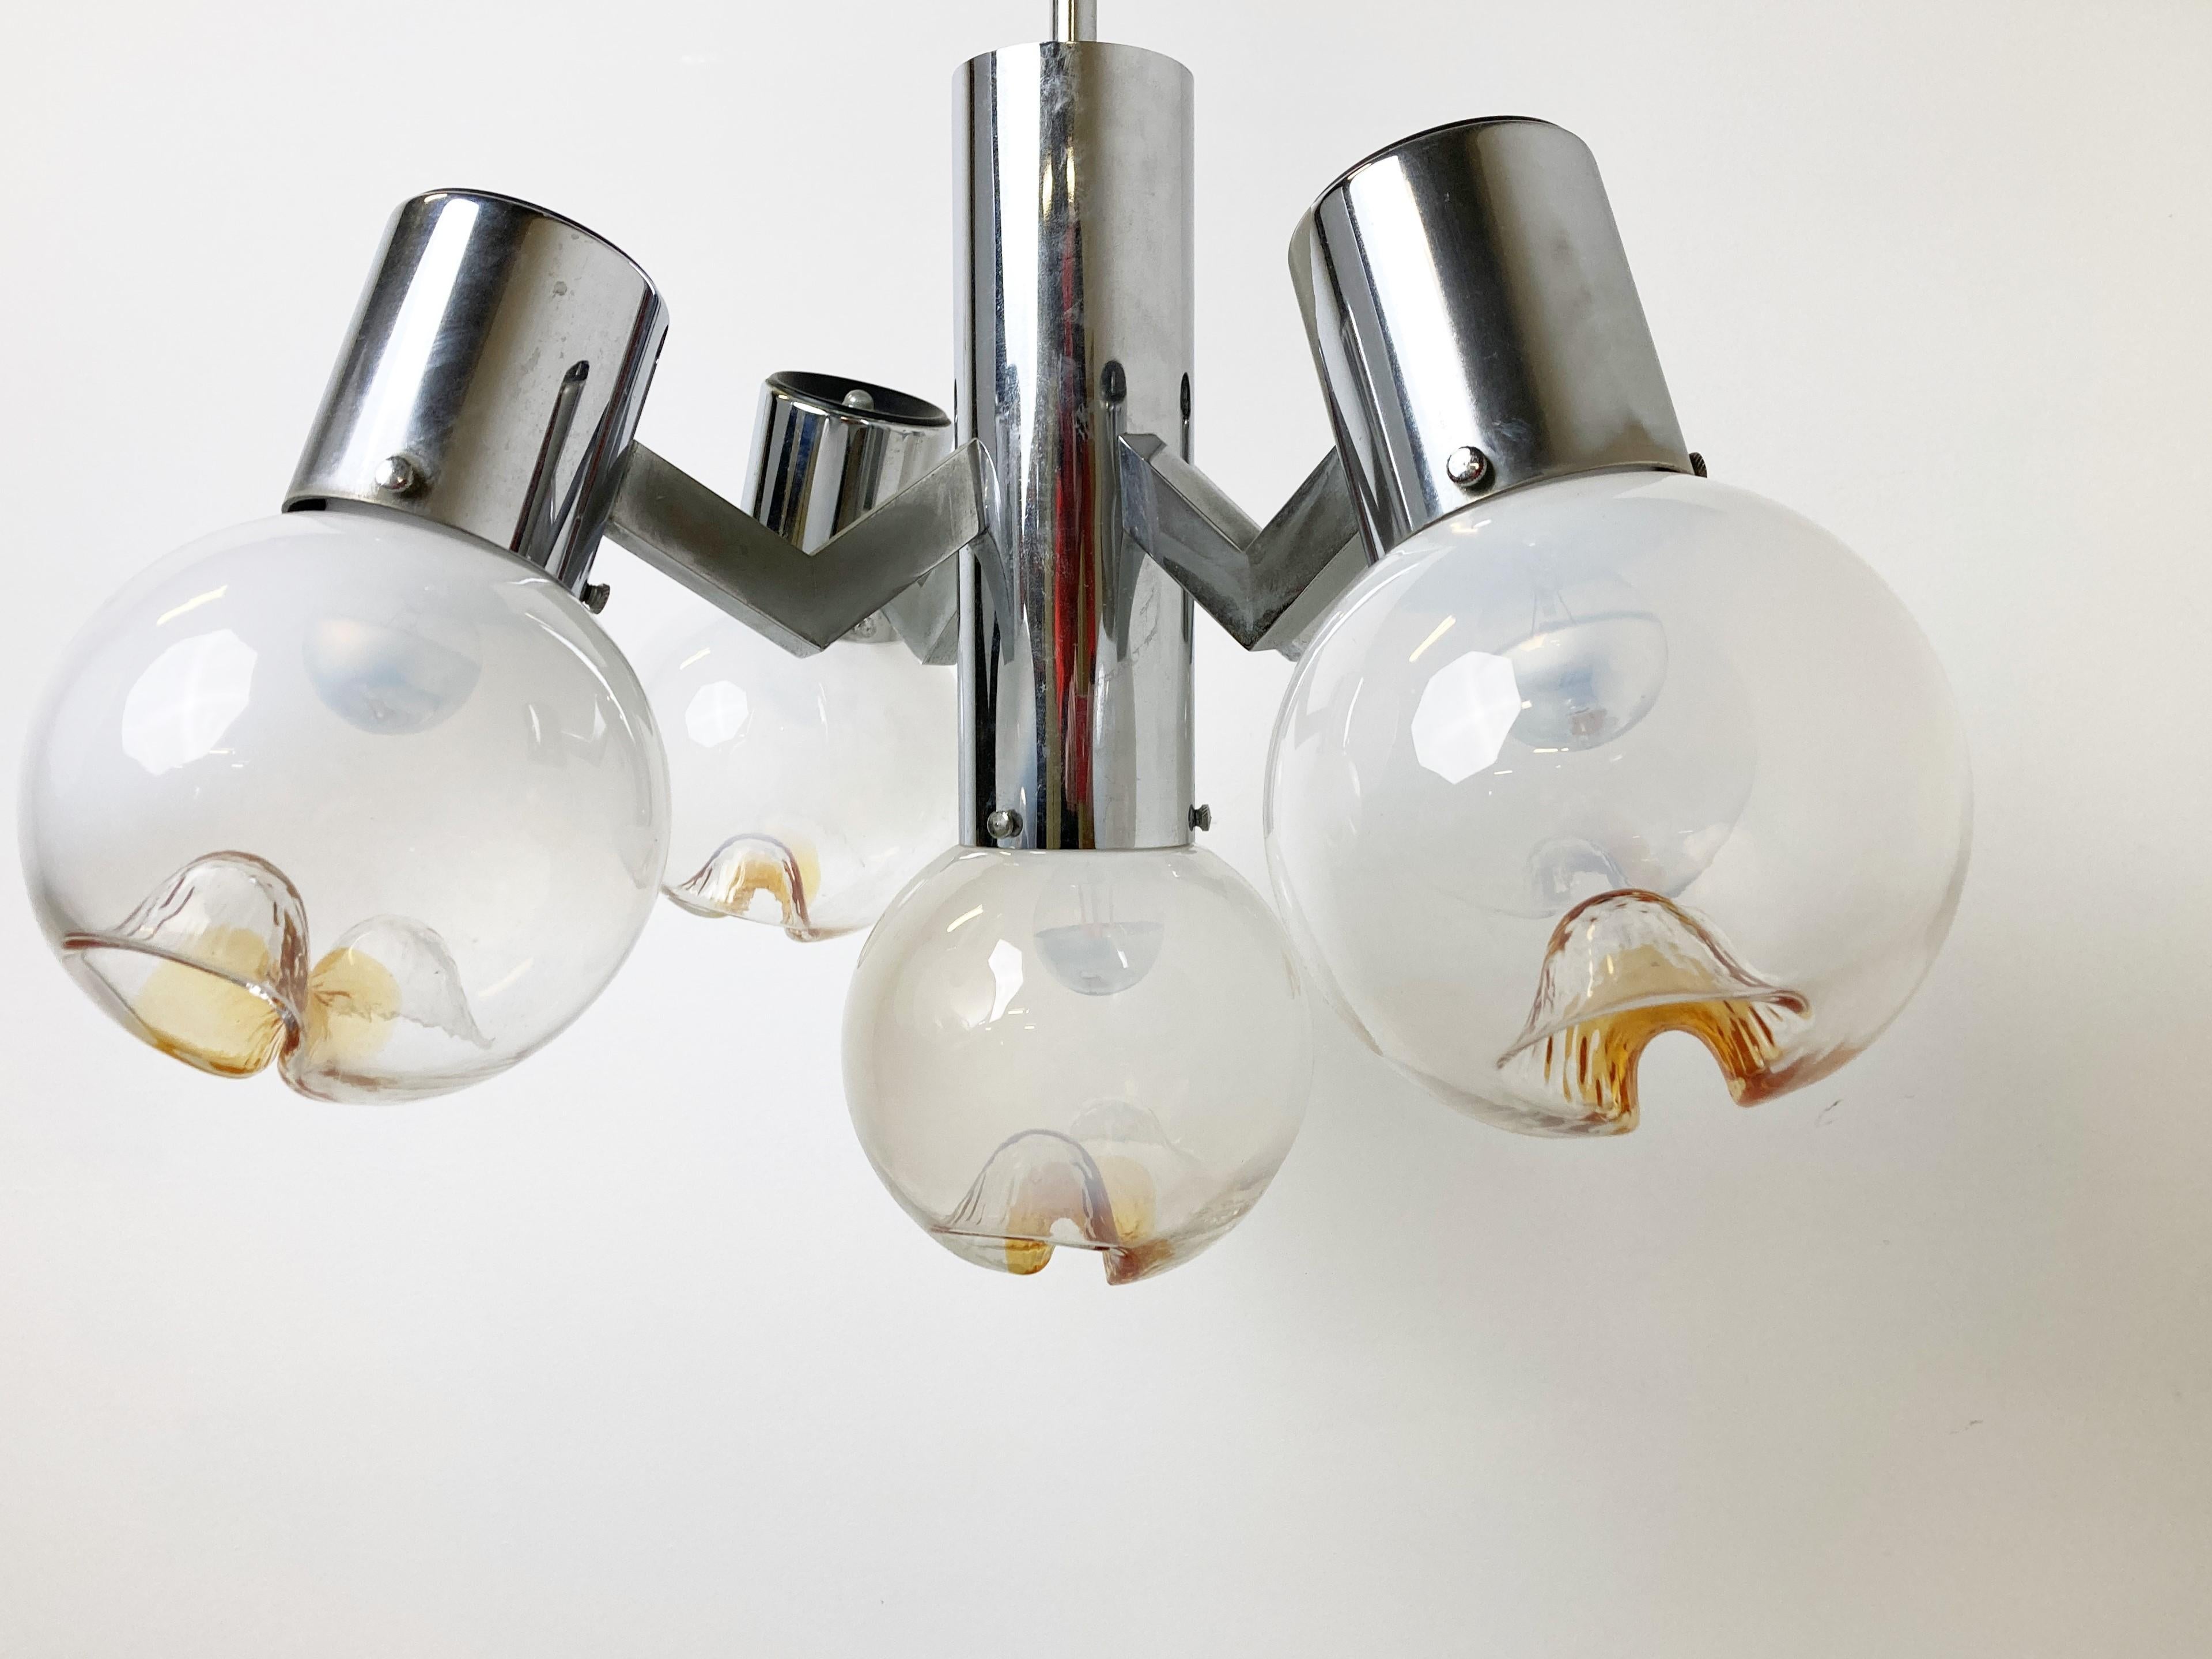 Lustre à 5 globes en verre de Murano avec une structure en métal chromé par Murano AV - Italie.

Le lustre crée une belle lumière.

Testé et prêt à l'emploi. 

Bon état

Années 1960 - Italie

Hauteur : 88cm/34.64